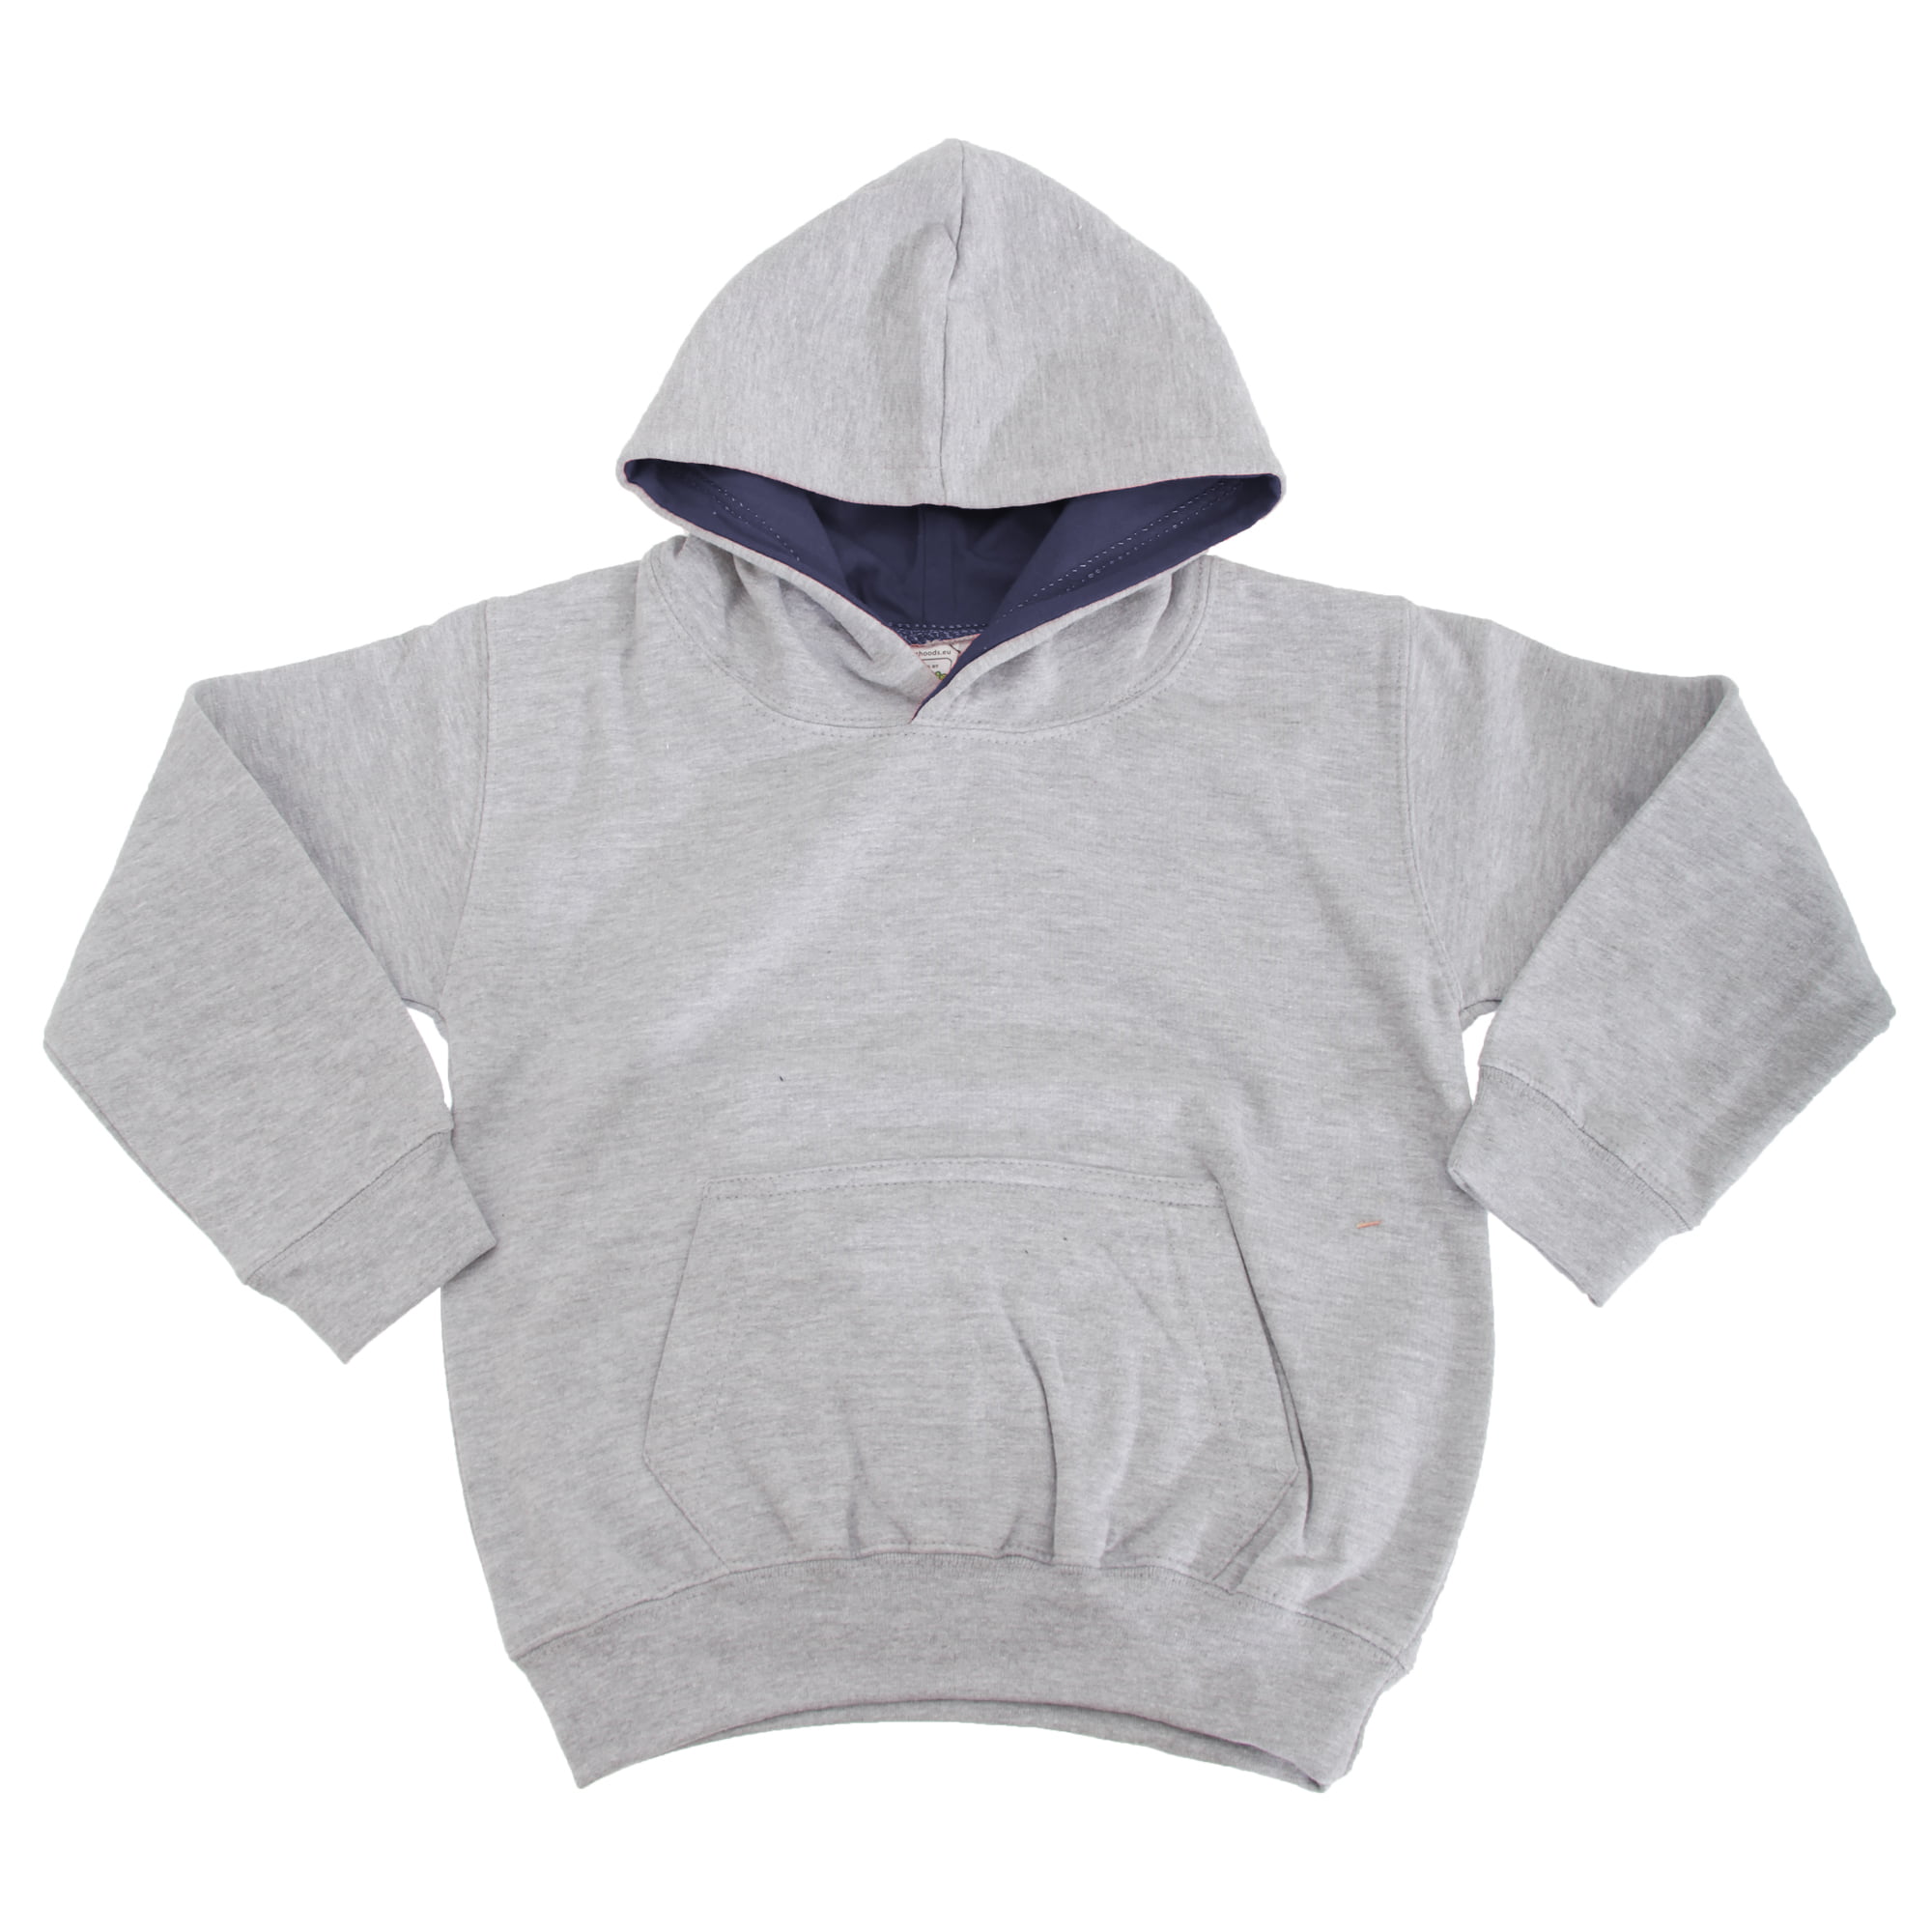 New AWDIS Kids Varsity Contrast Hoodie Hooded Jumper Quality Hoody Sweatshirt